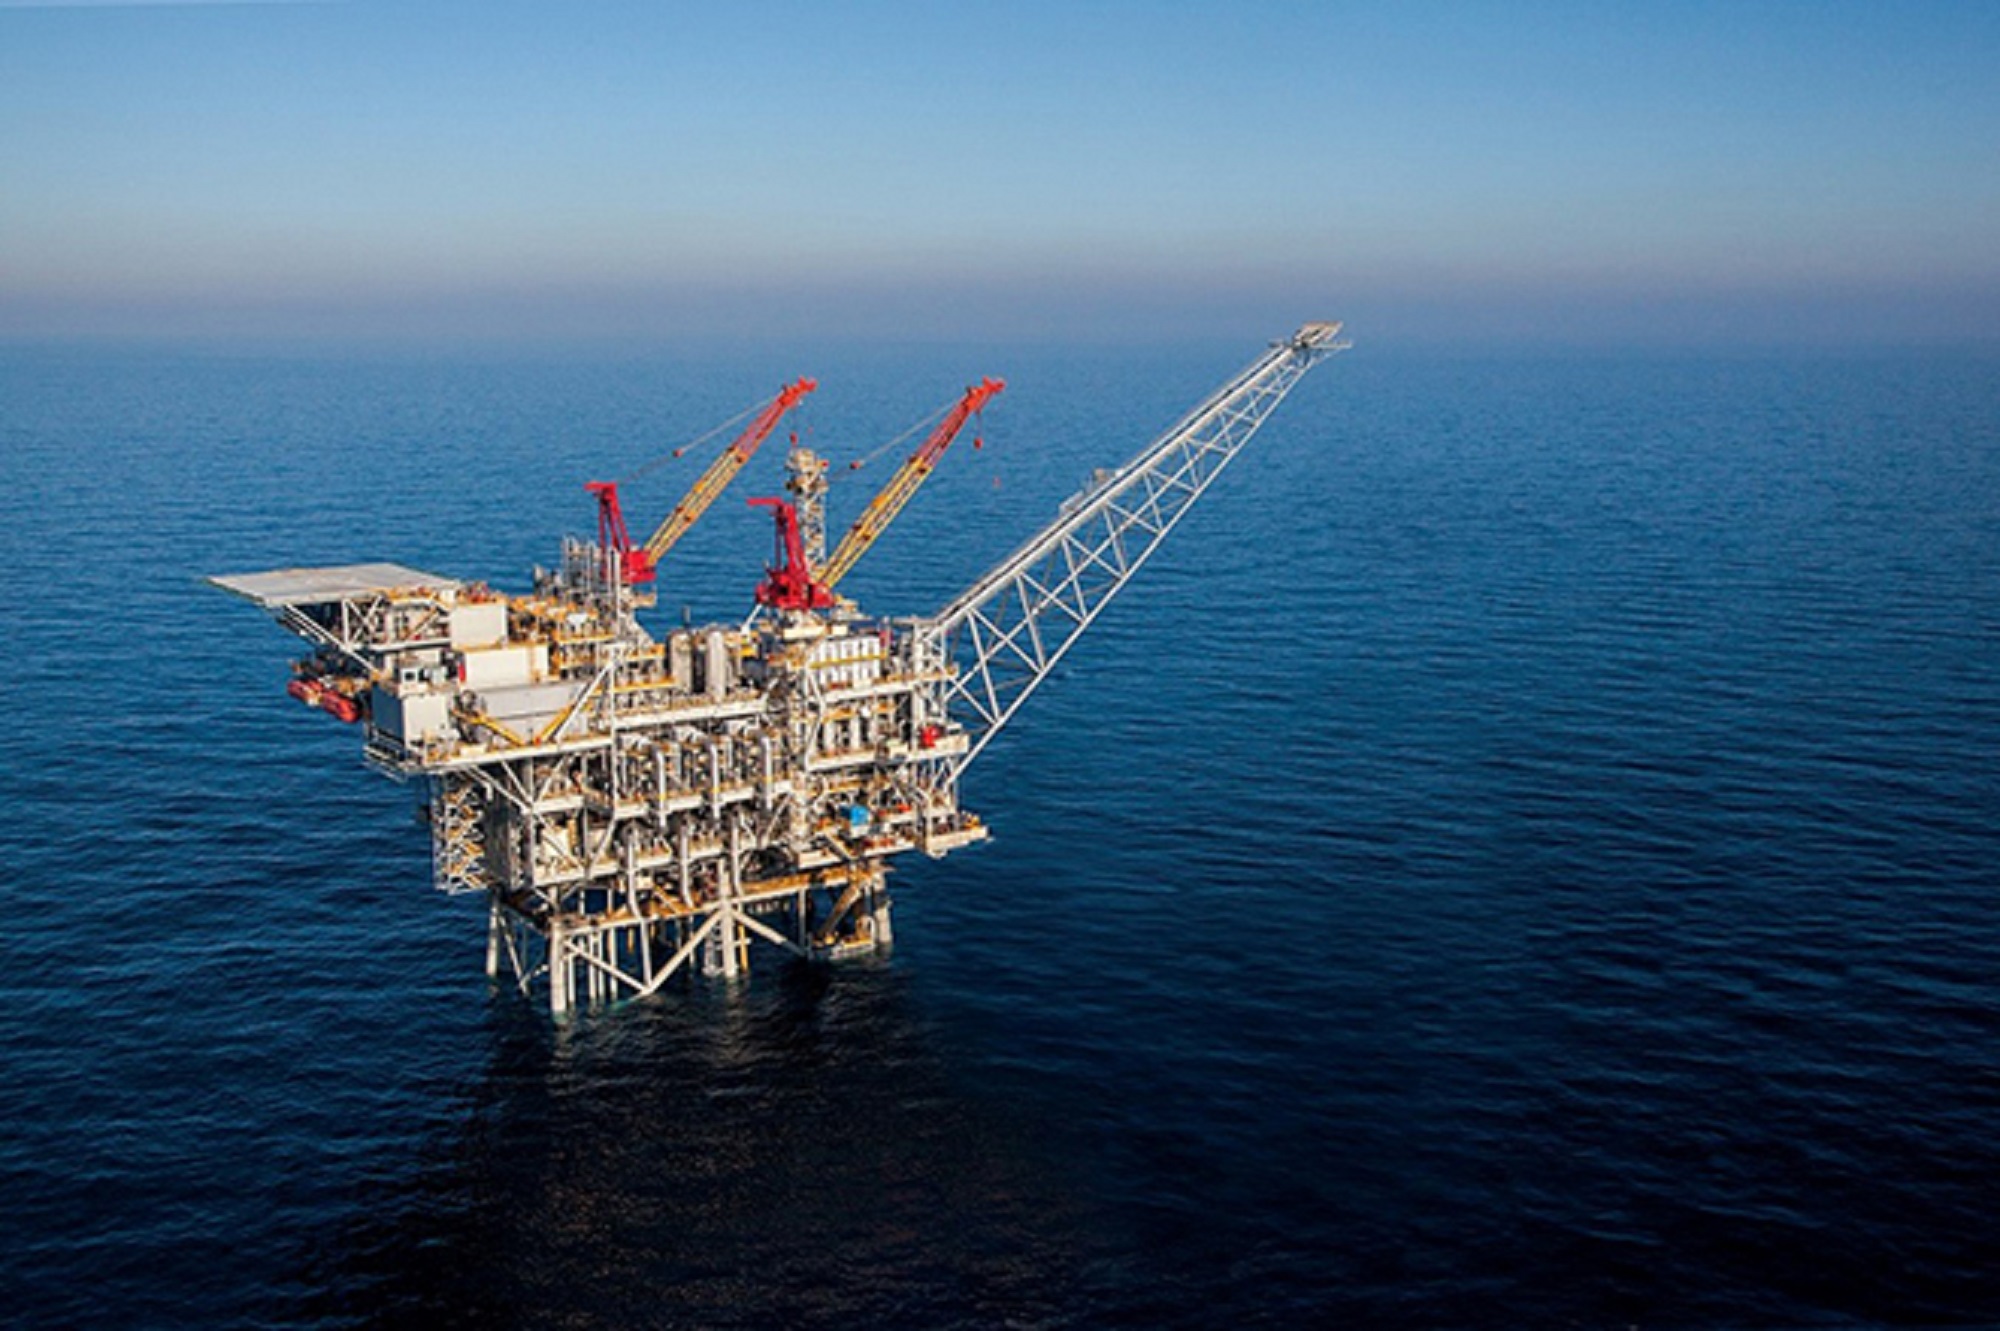 Αίγυπτος: Ανακοίνωσε νέο διεθνή διαγωνισμό για δικαιώματα έρευνας για πετρέλαιο και φυσικό αέριο